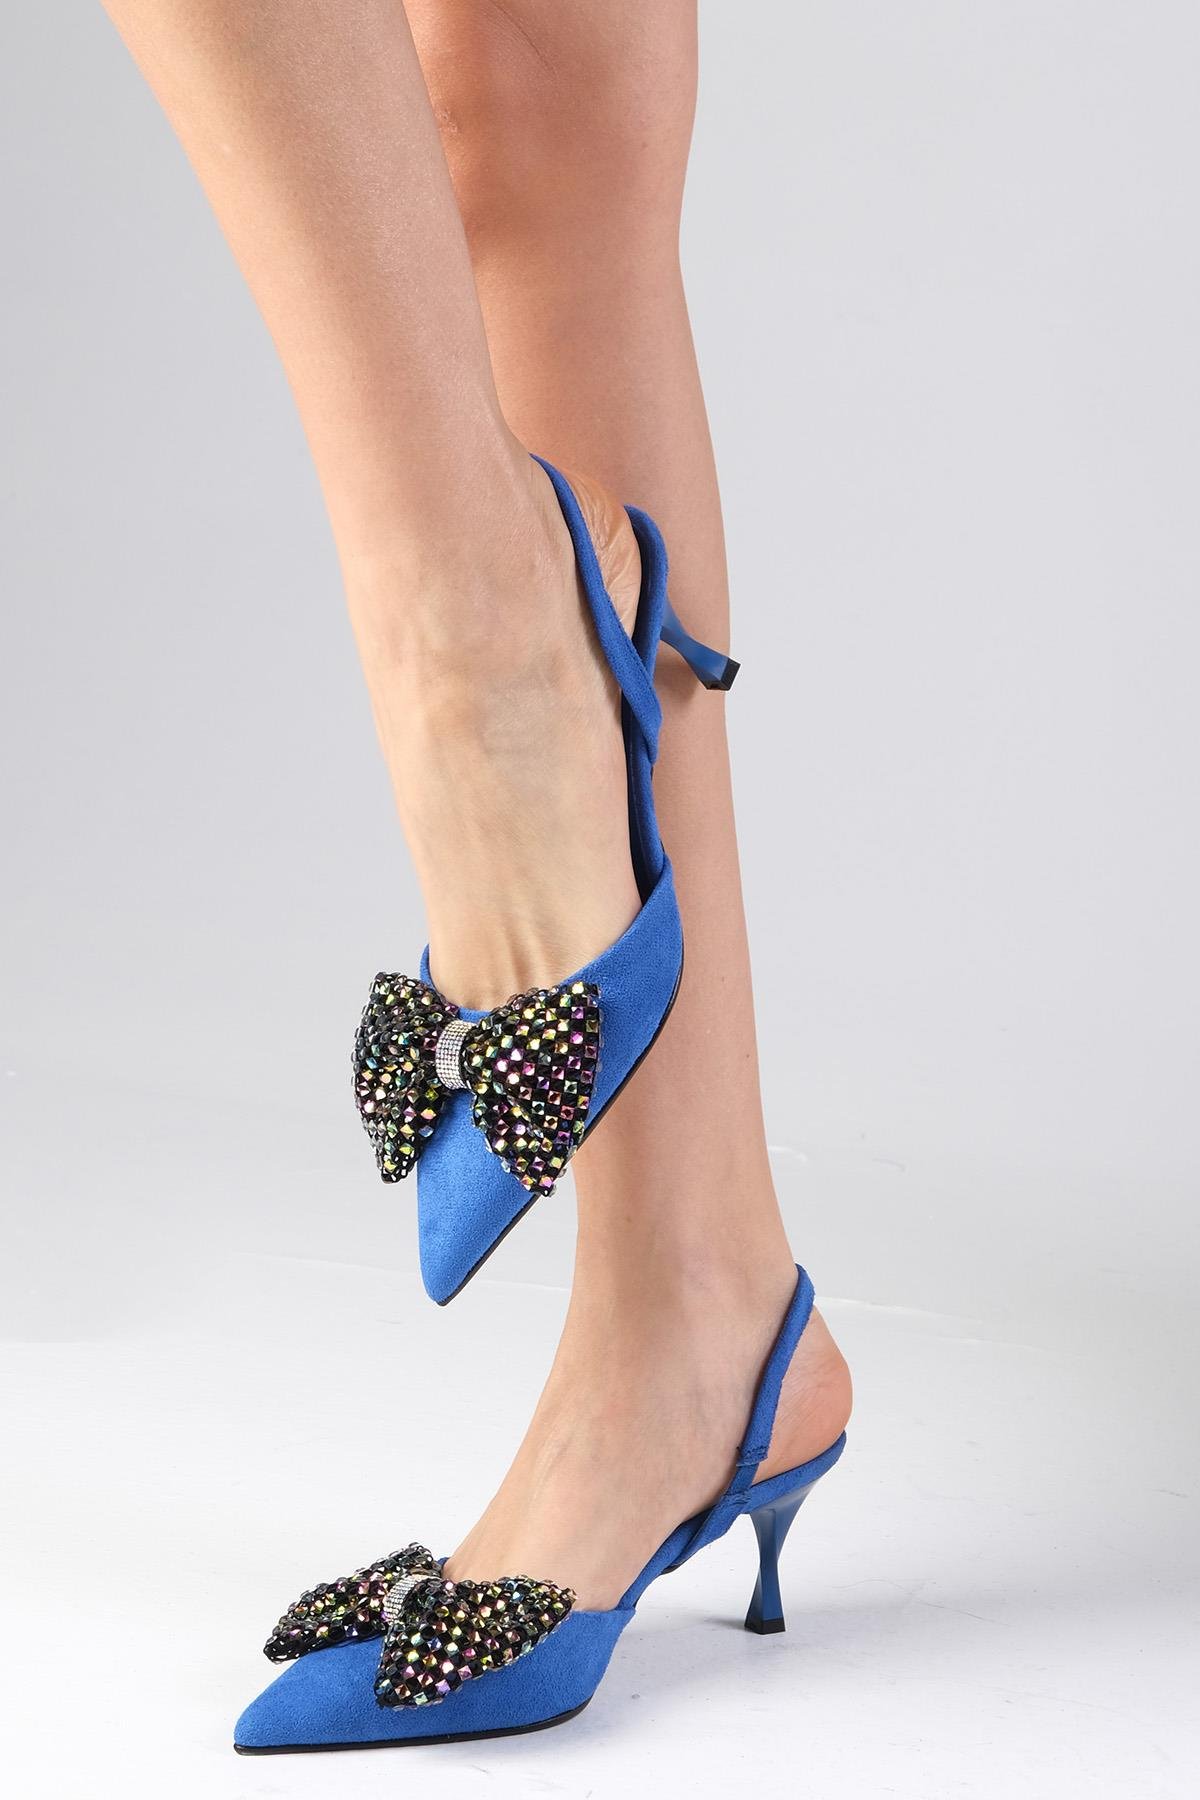 miogusto.com.tr'de parti ve gece ayakkabısı arıyorsanız, Mio Gusto'nun  Melody Siyah Renk Süet Topuklu Ayakkabısı tam size göre. Şık tasarımı ve  marka kalitesiyle öne çıkan bu ürün, TOPUKLU ve Abiye Ayakkabı  kategorilerinde bulunuyor.